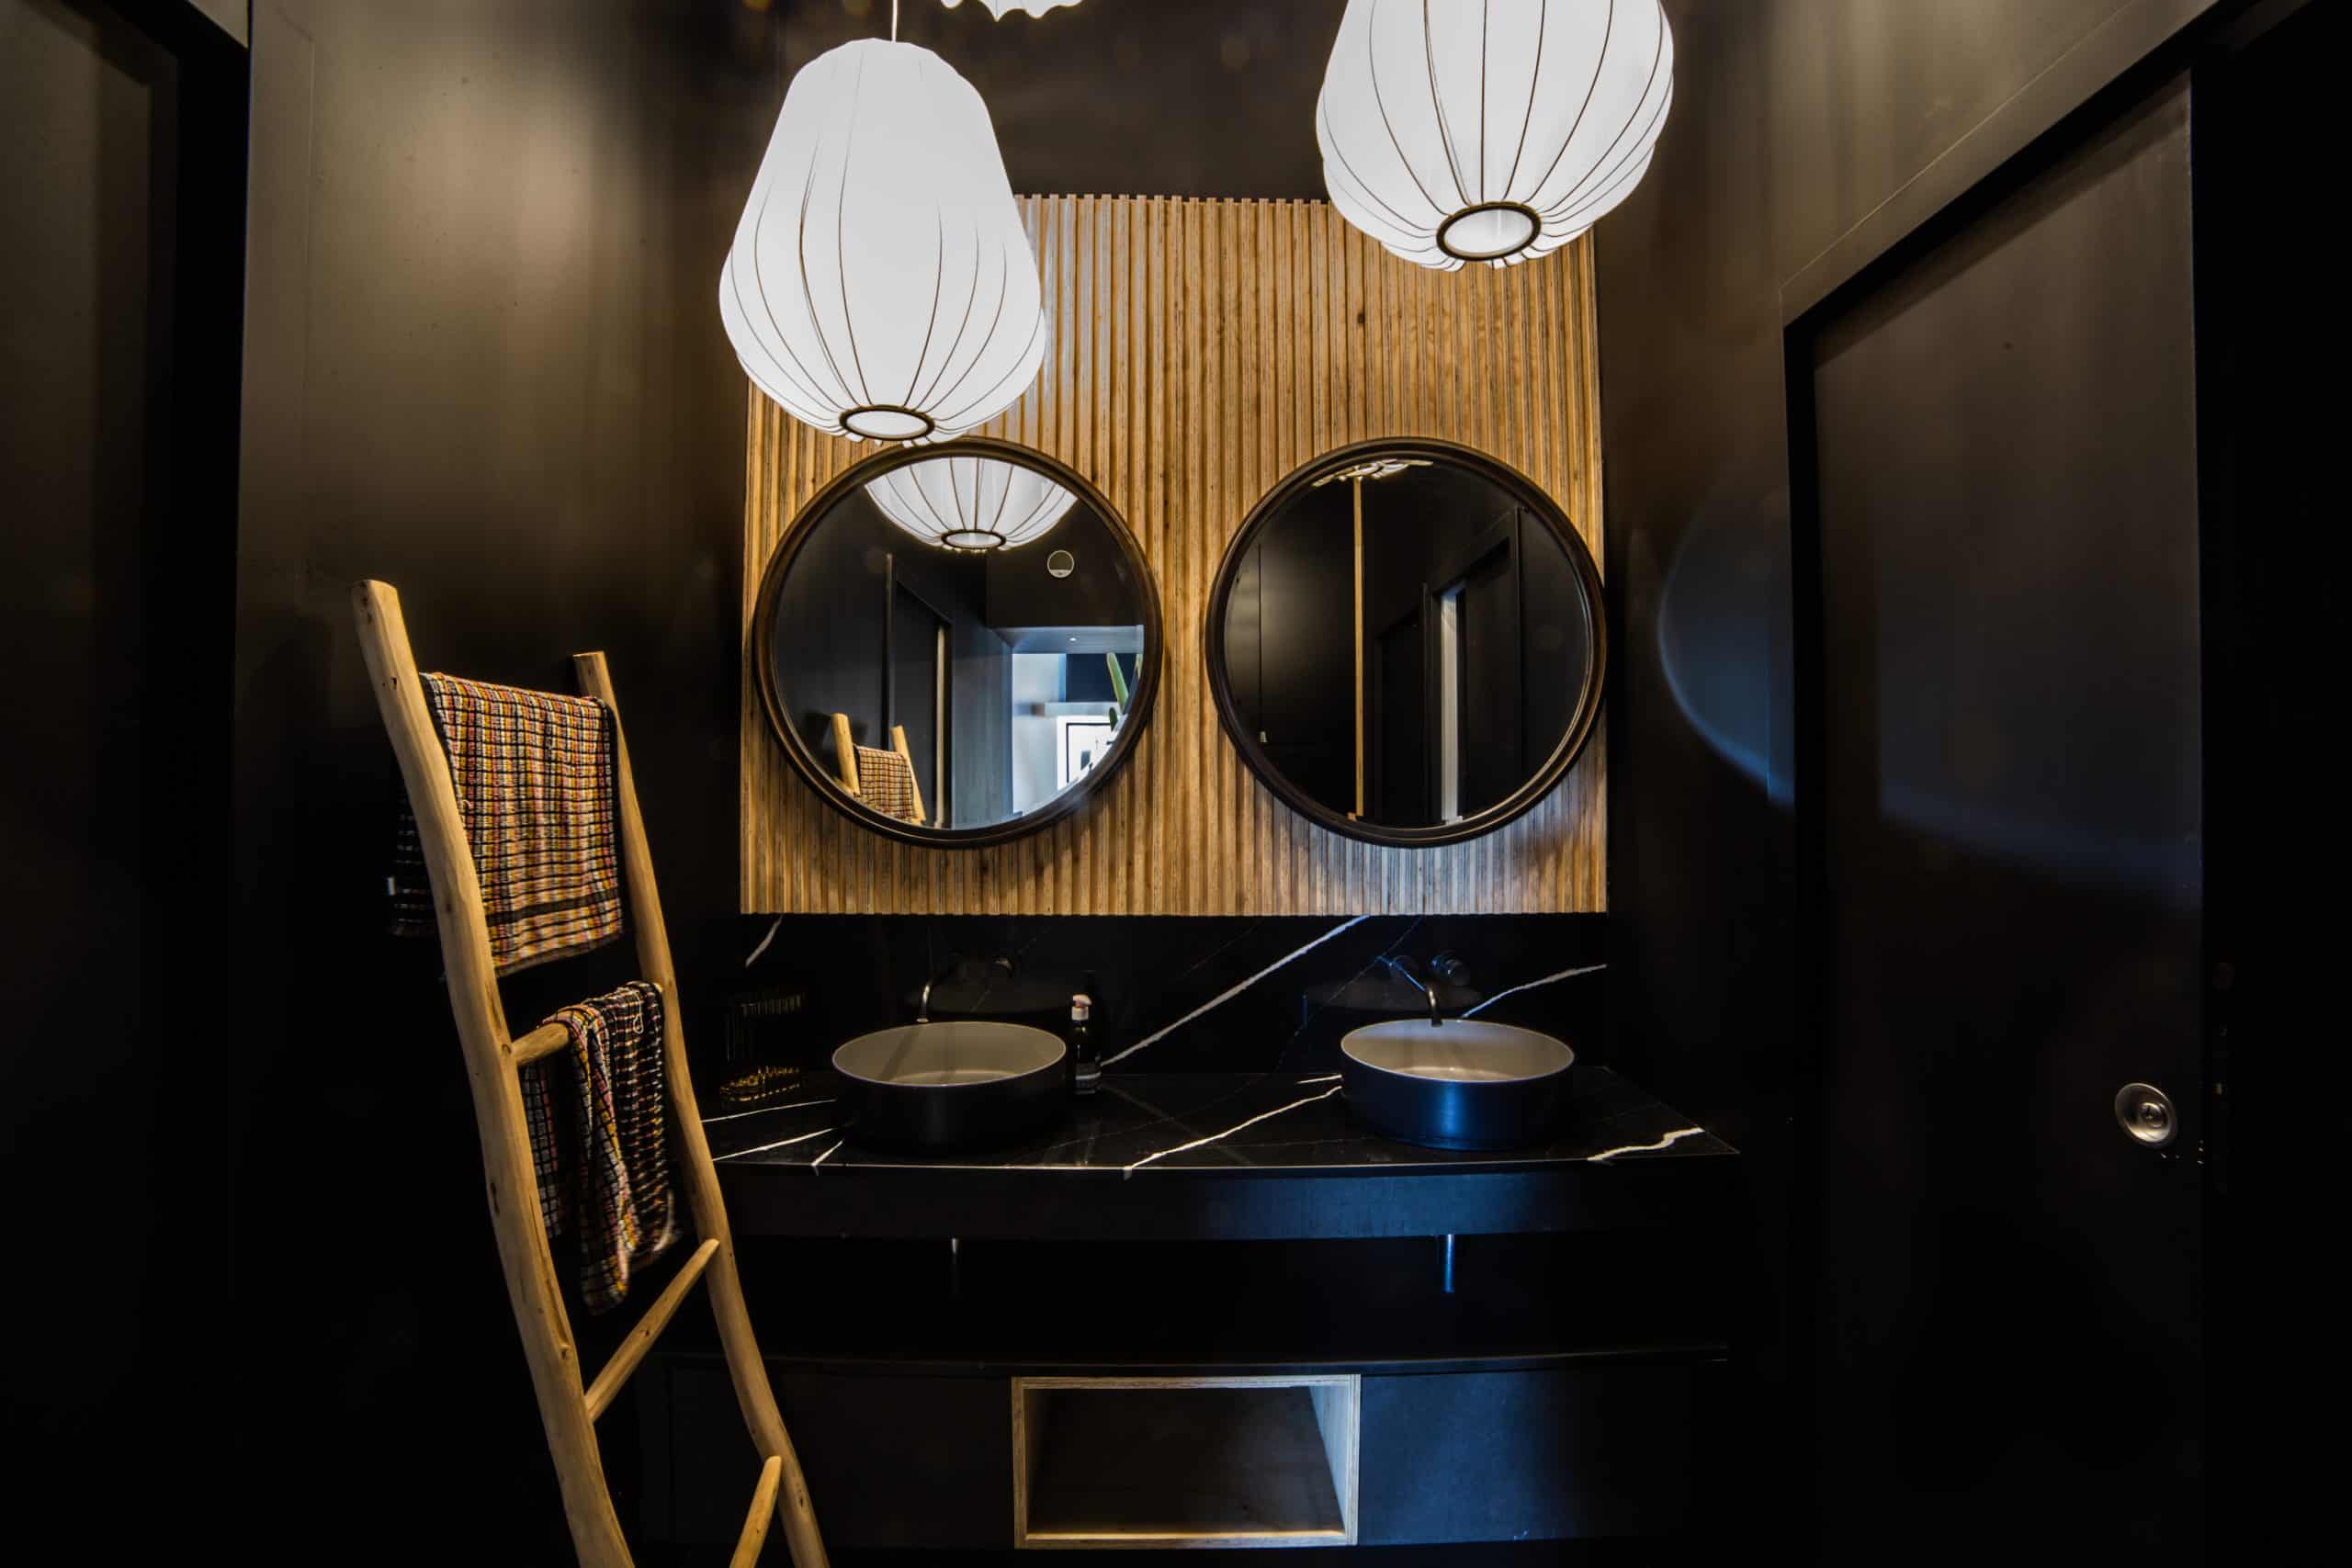 Salle de bain noire showroom lustre en ballon LMDB la manufacture du bâtiment montpellier